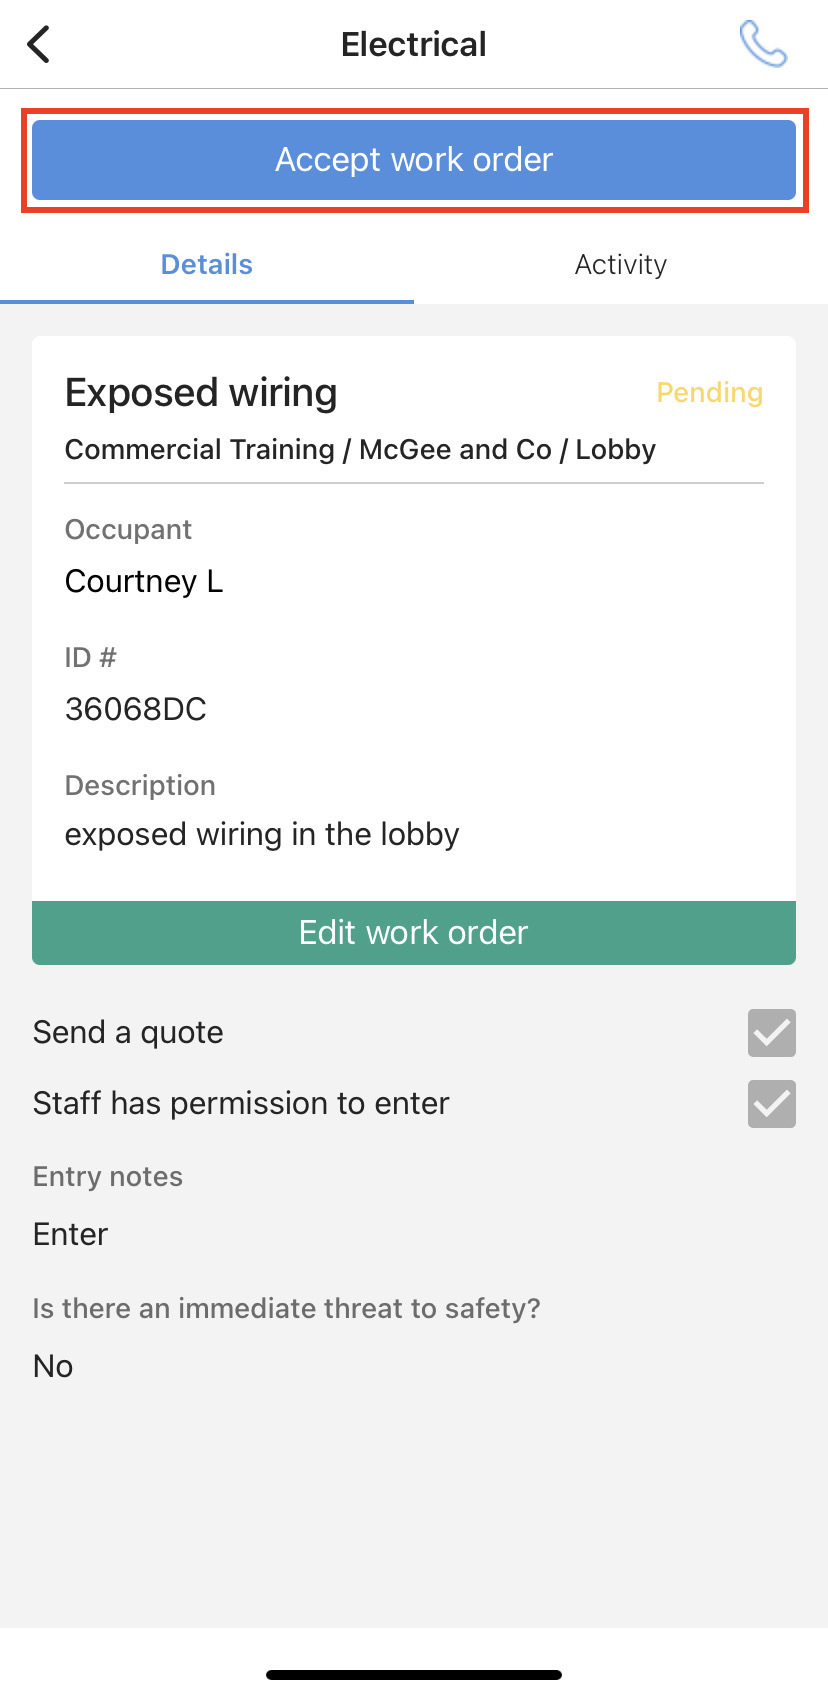 accept_work_order_com_staff_app.jpeg